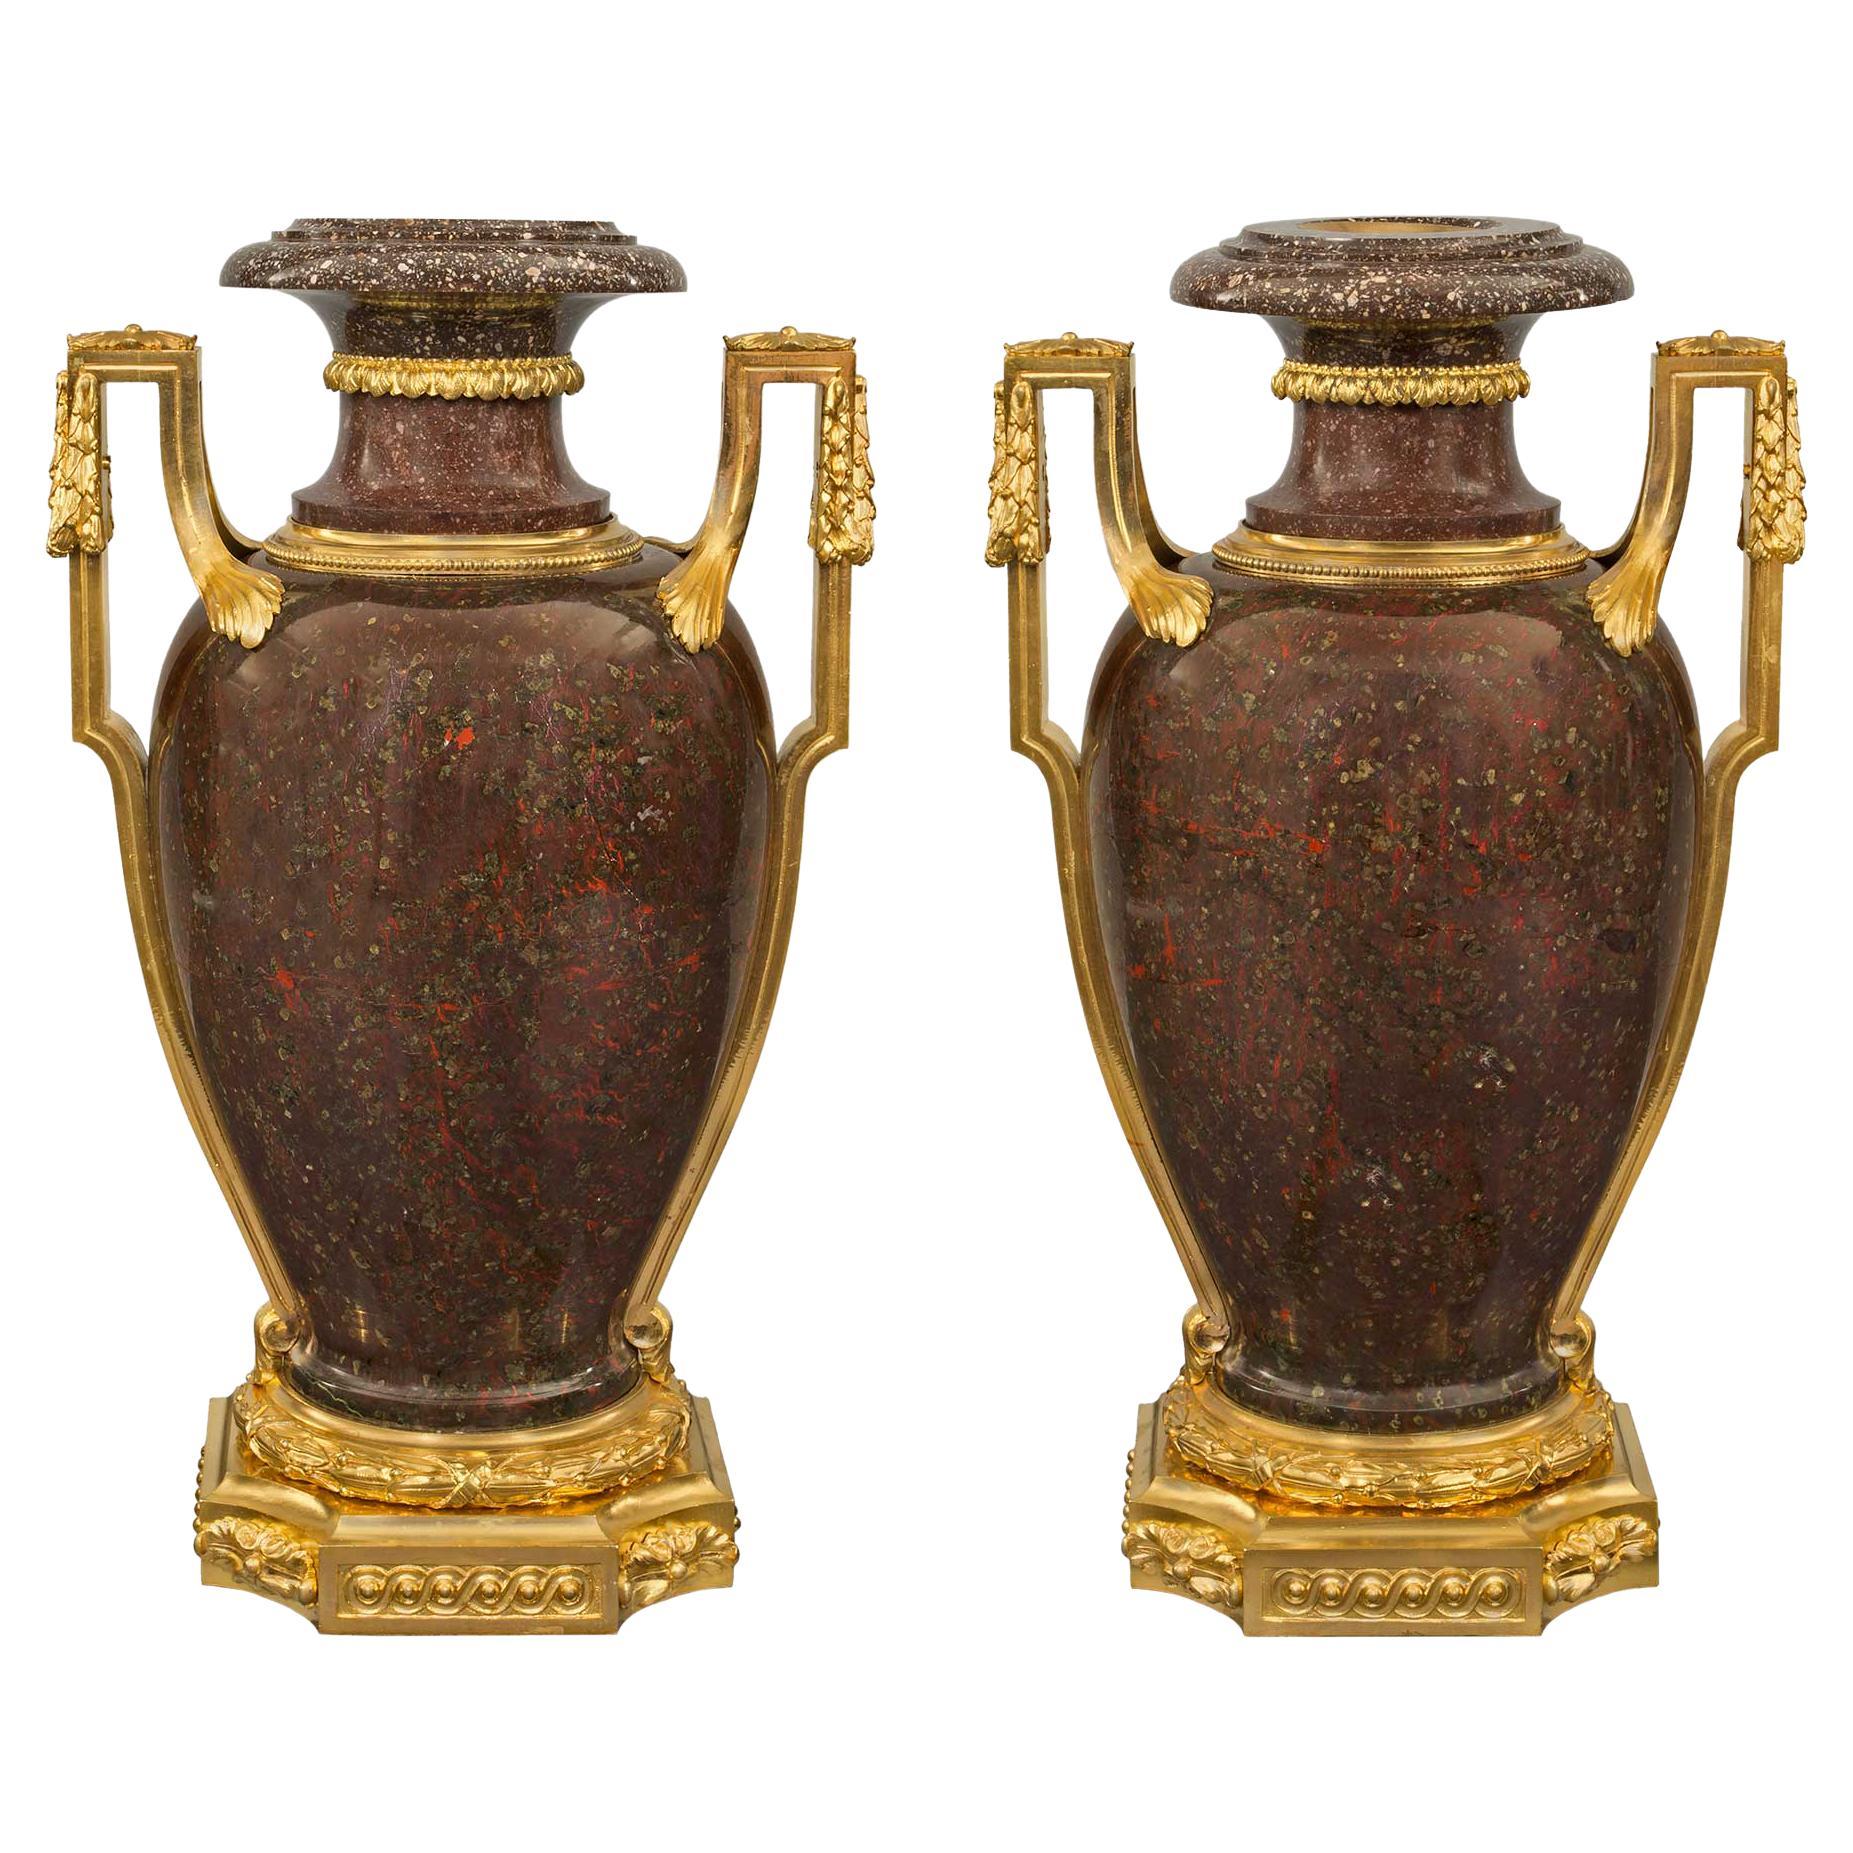 Französische Porphyr- und Goldbronze-Urnen im Louis-XVI-Stil des frühen 19. Jahrhunderts